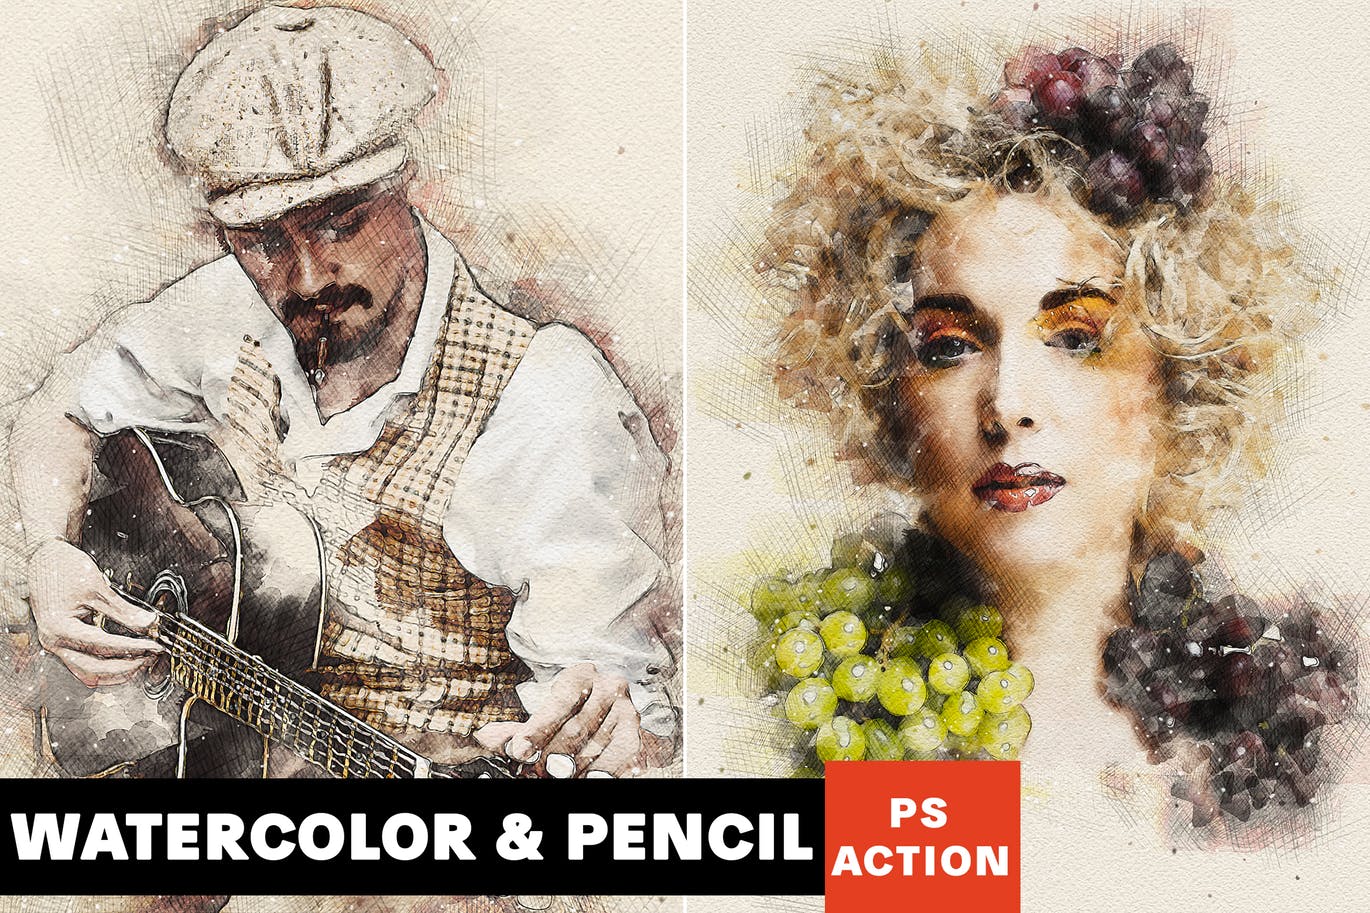 水彩/铅笔阴影素描艺术效果16图库精选PS动作 Watercolor & Pencil Photoshop Action插图